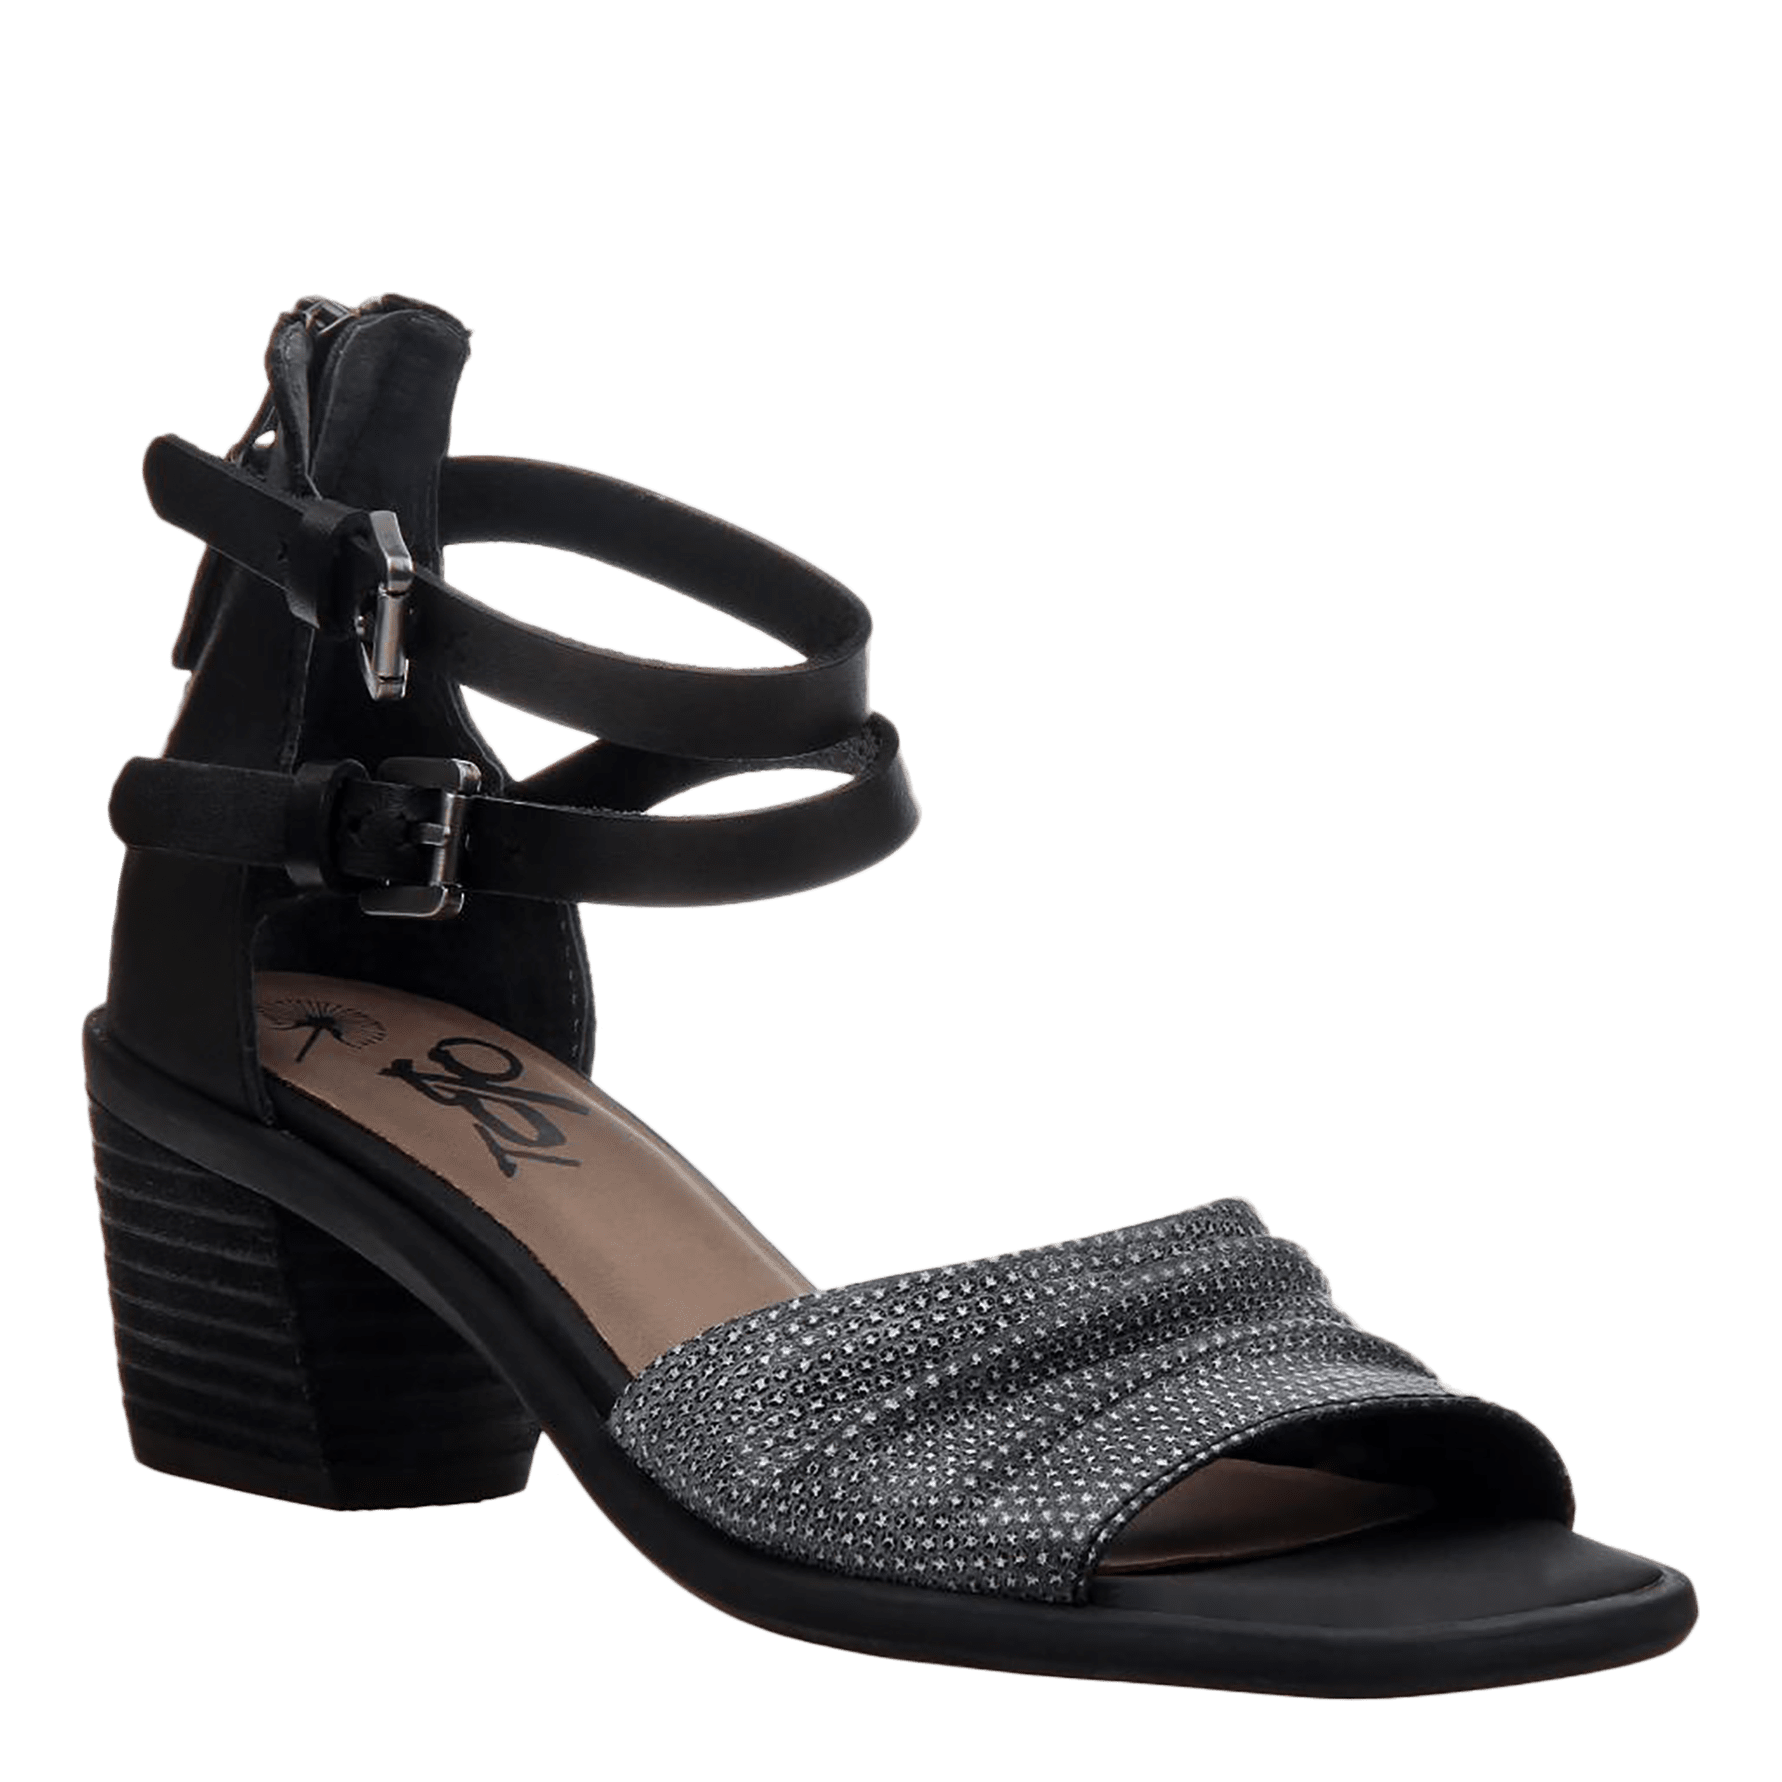 black heel shoes